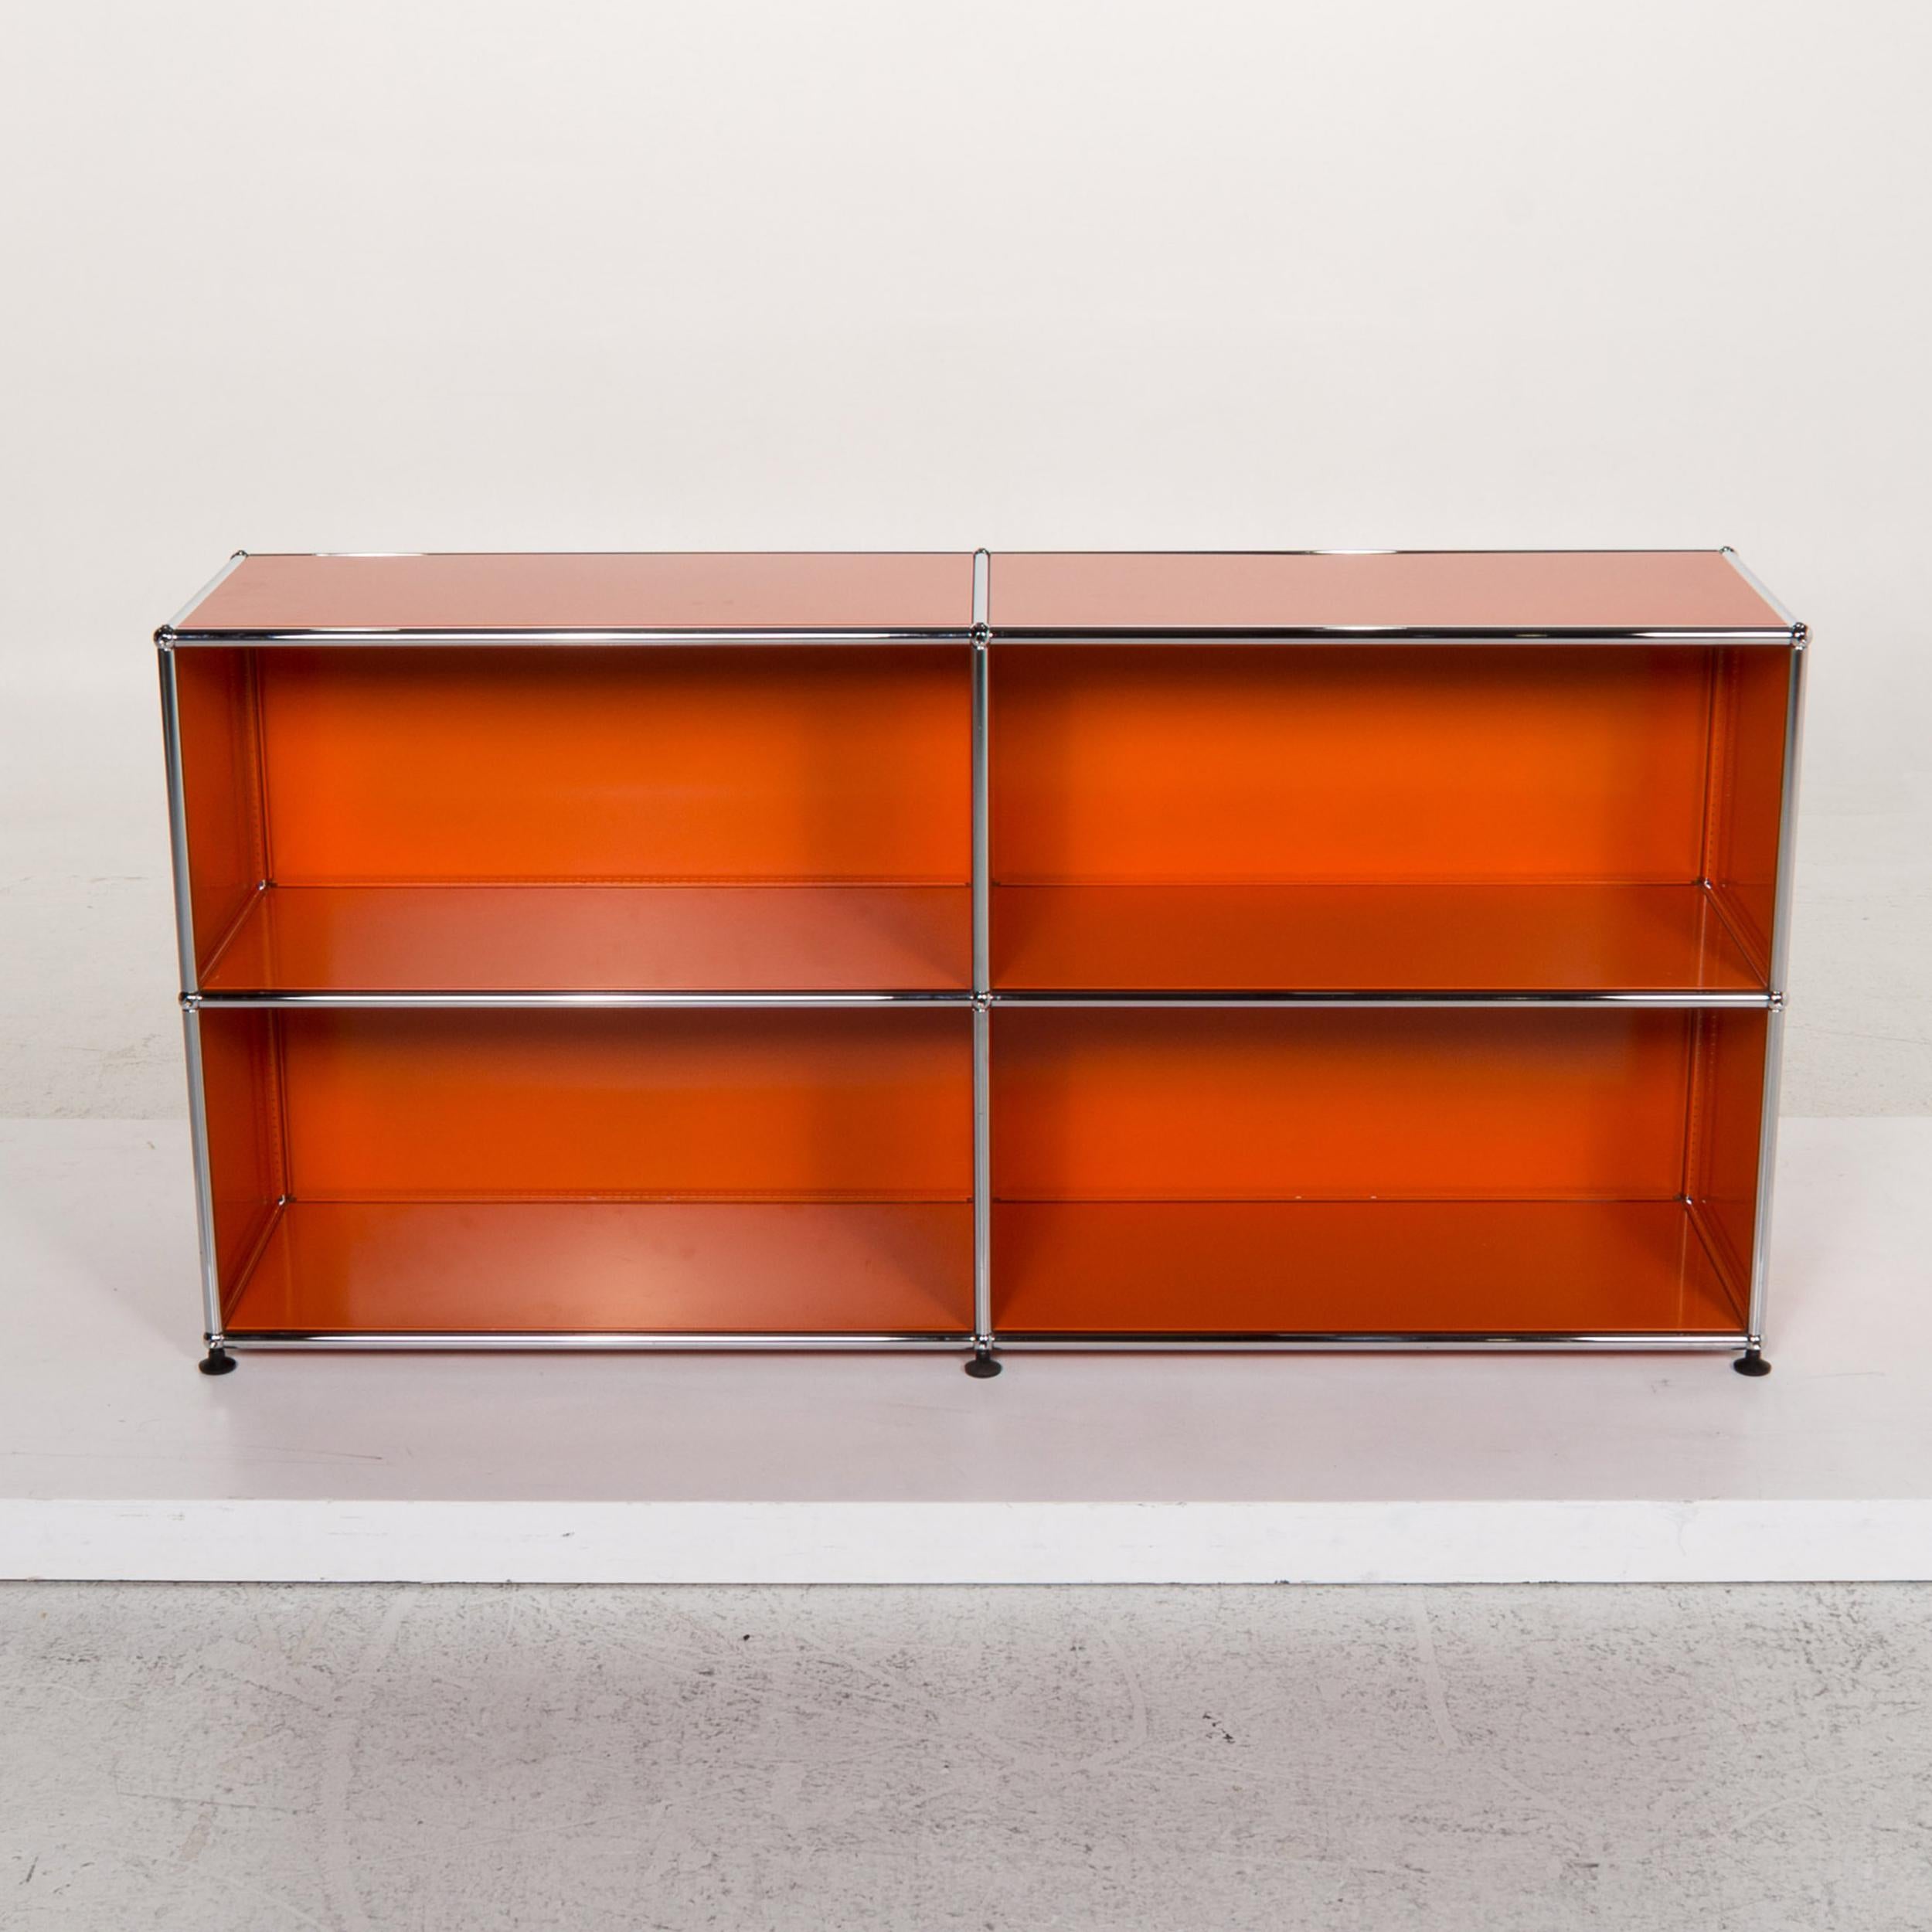 USM Haller Metal Sideboard Orange Office Furniture Shelf 1